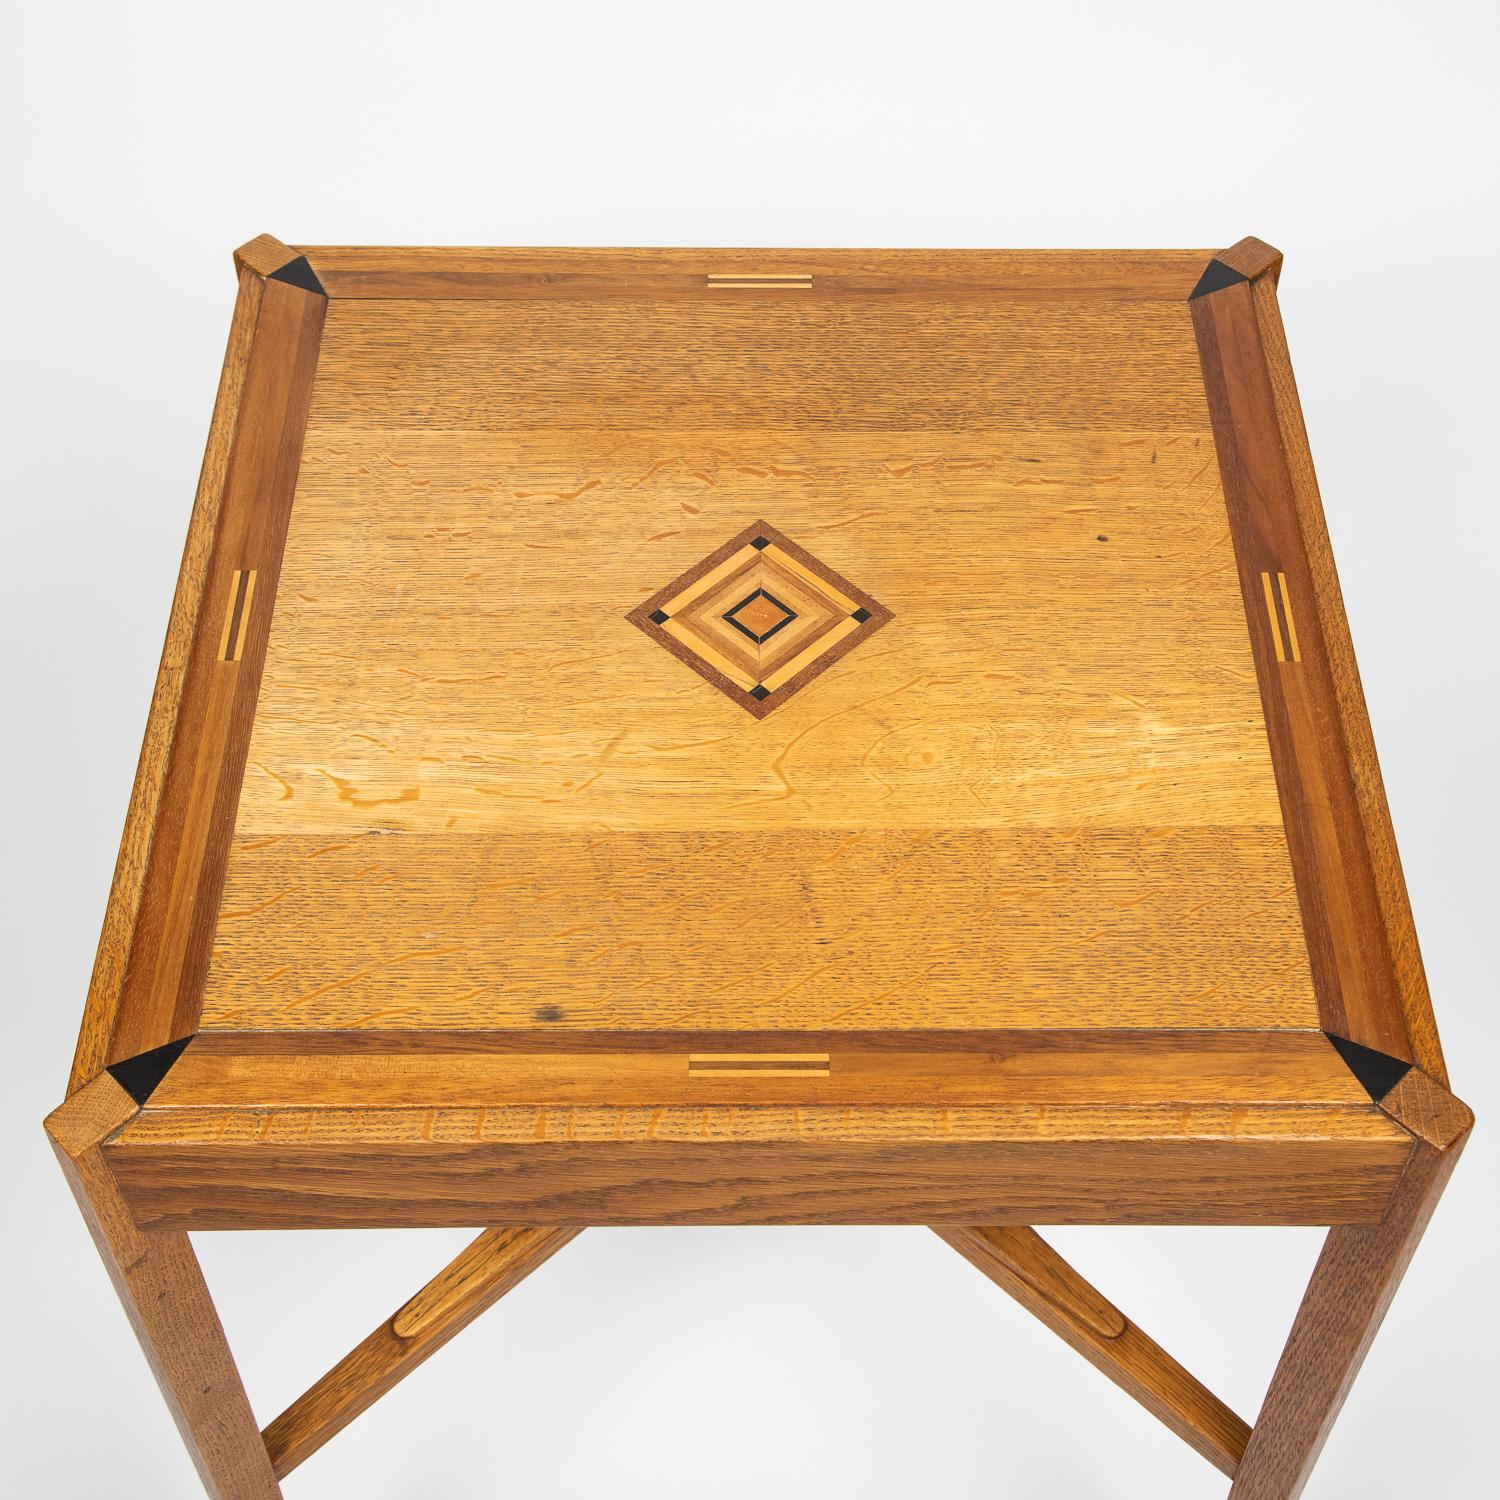 Table d'appoint en chêne du début du XXe siècle, avec un motif central géométrique incrusté de spécimens, anglais.